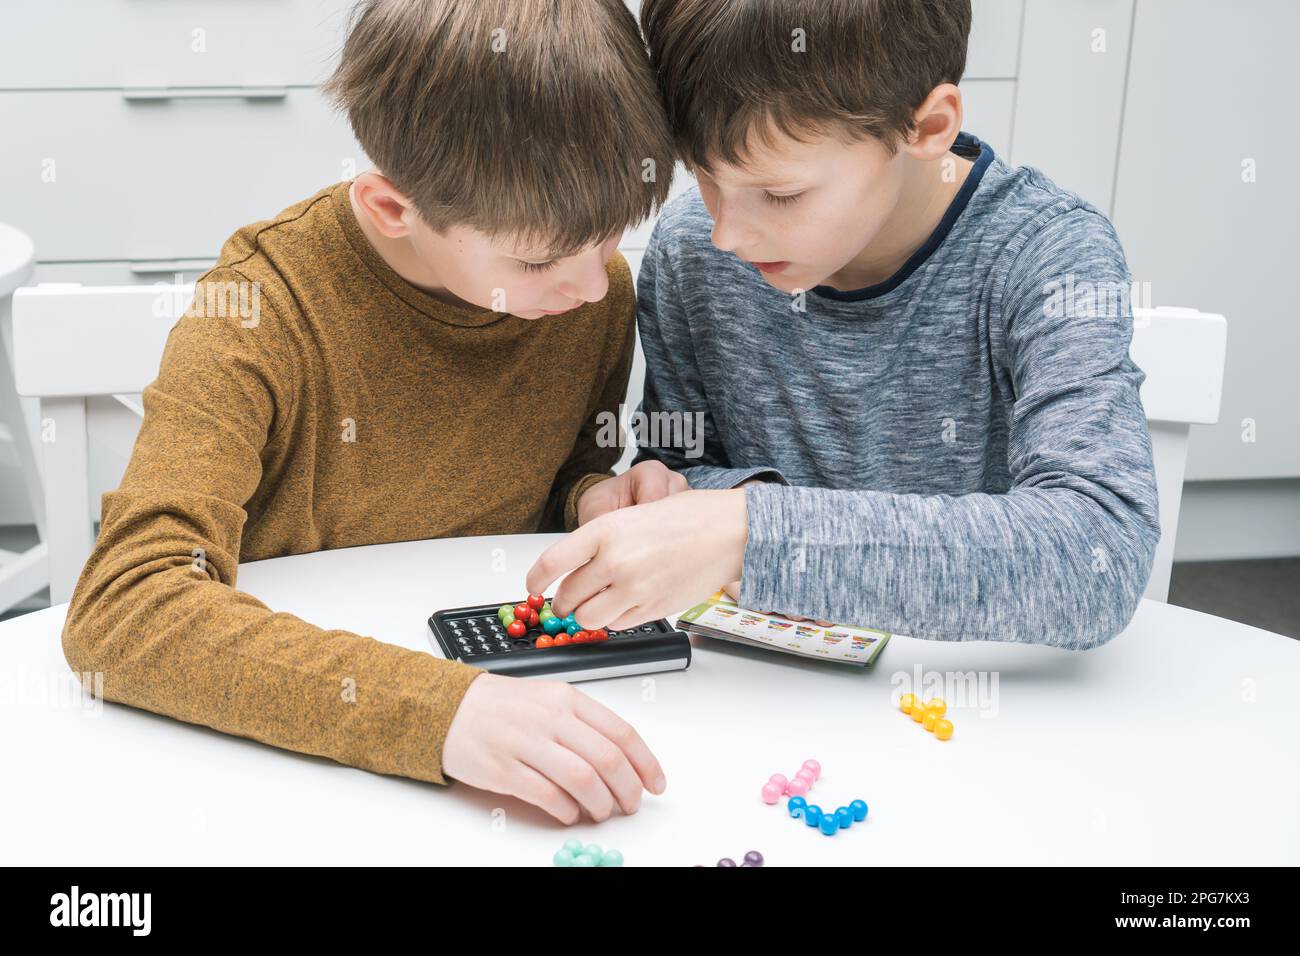 Zwei nachdenkliche und begeisterte Jungen spielen pädagogisches Strategiespiel mit Schwarzfeld und bunten Bällen auf dem Tisch. Rätsel lösen und finden Stockfoto